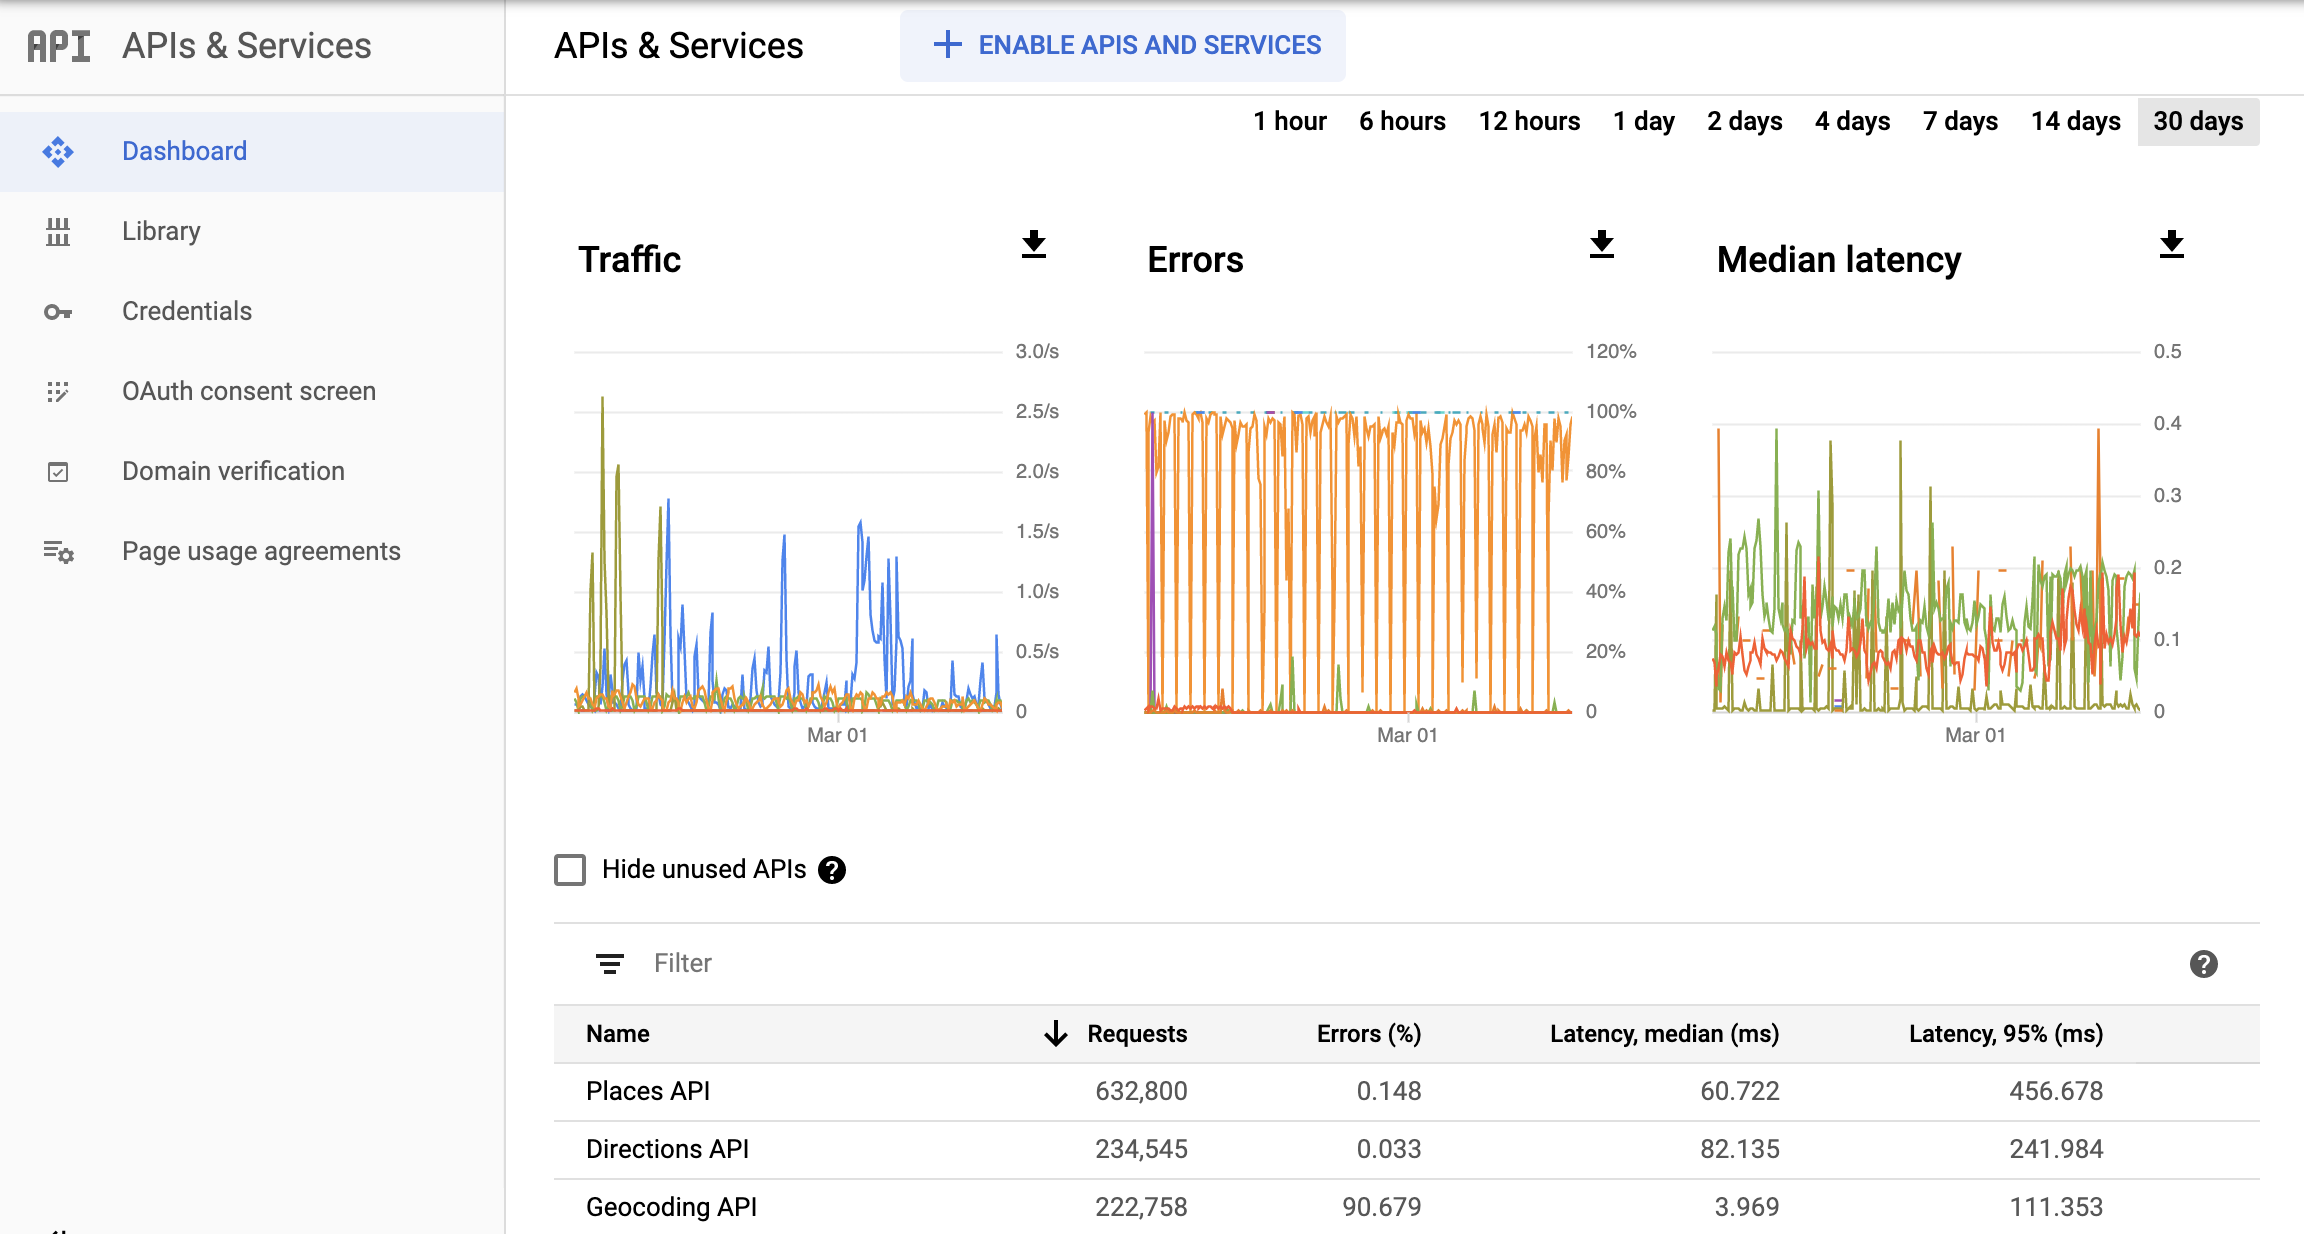 Ảnh chụp màn hình trang Monitoring API (API giám sát) trong Google Cloud Console, trong đó cho thấy trang tổng quan về báo cáo API và dịch vụ. Báo cáo này trình bày các biểu đồ riêng về Lưu lượng truy cập, Lỗi và Độ trễ trung bình. Những biểu đồ này có thể hiển thị dữ liệu trong một giờ cho đến 30 ngày.